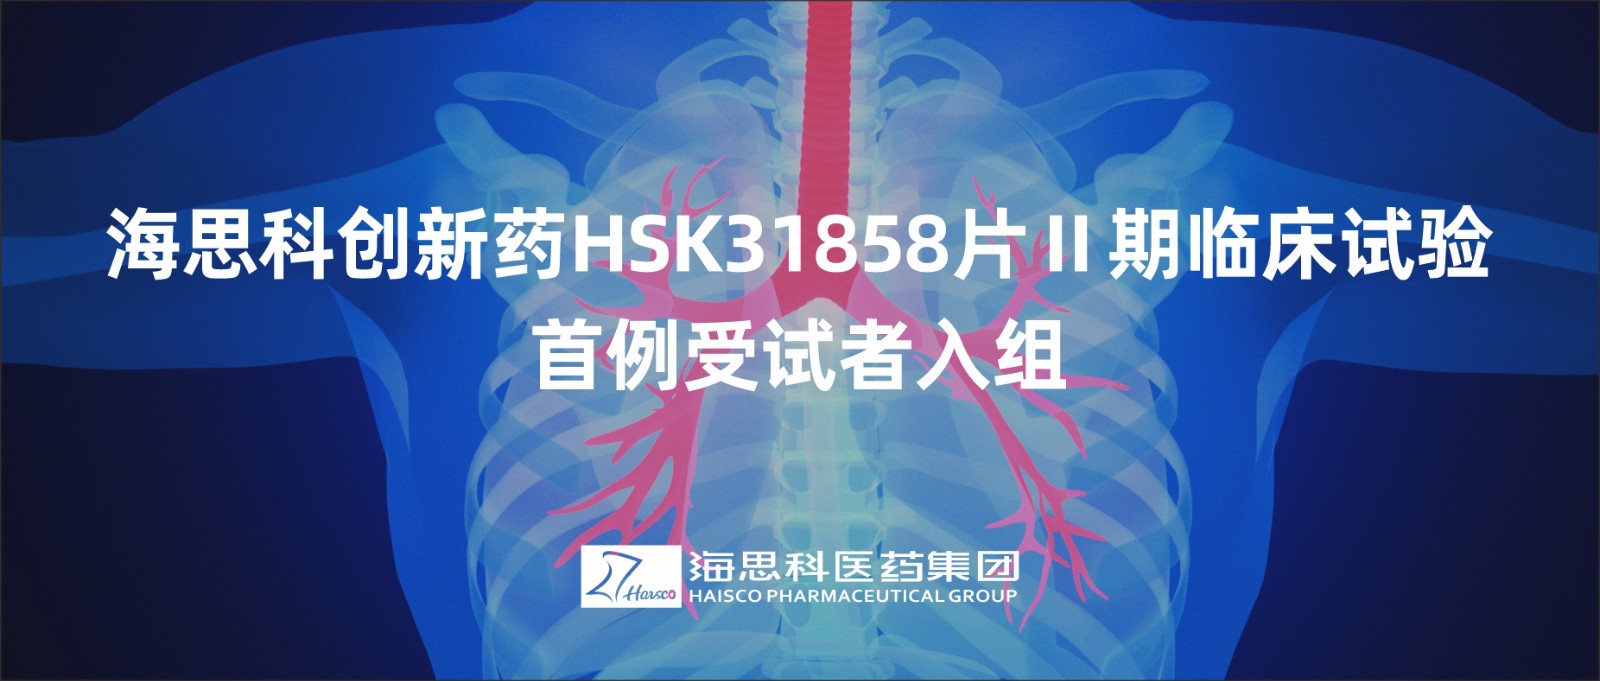 恒峰官网g22创新药HSK31858片Ⅱ期临床试验首例受试者入组